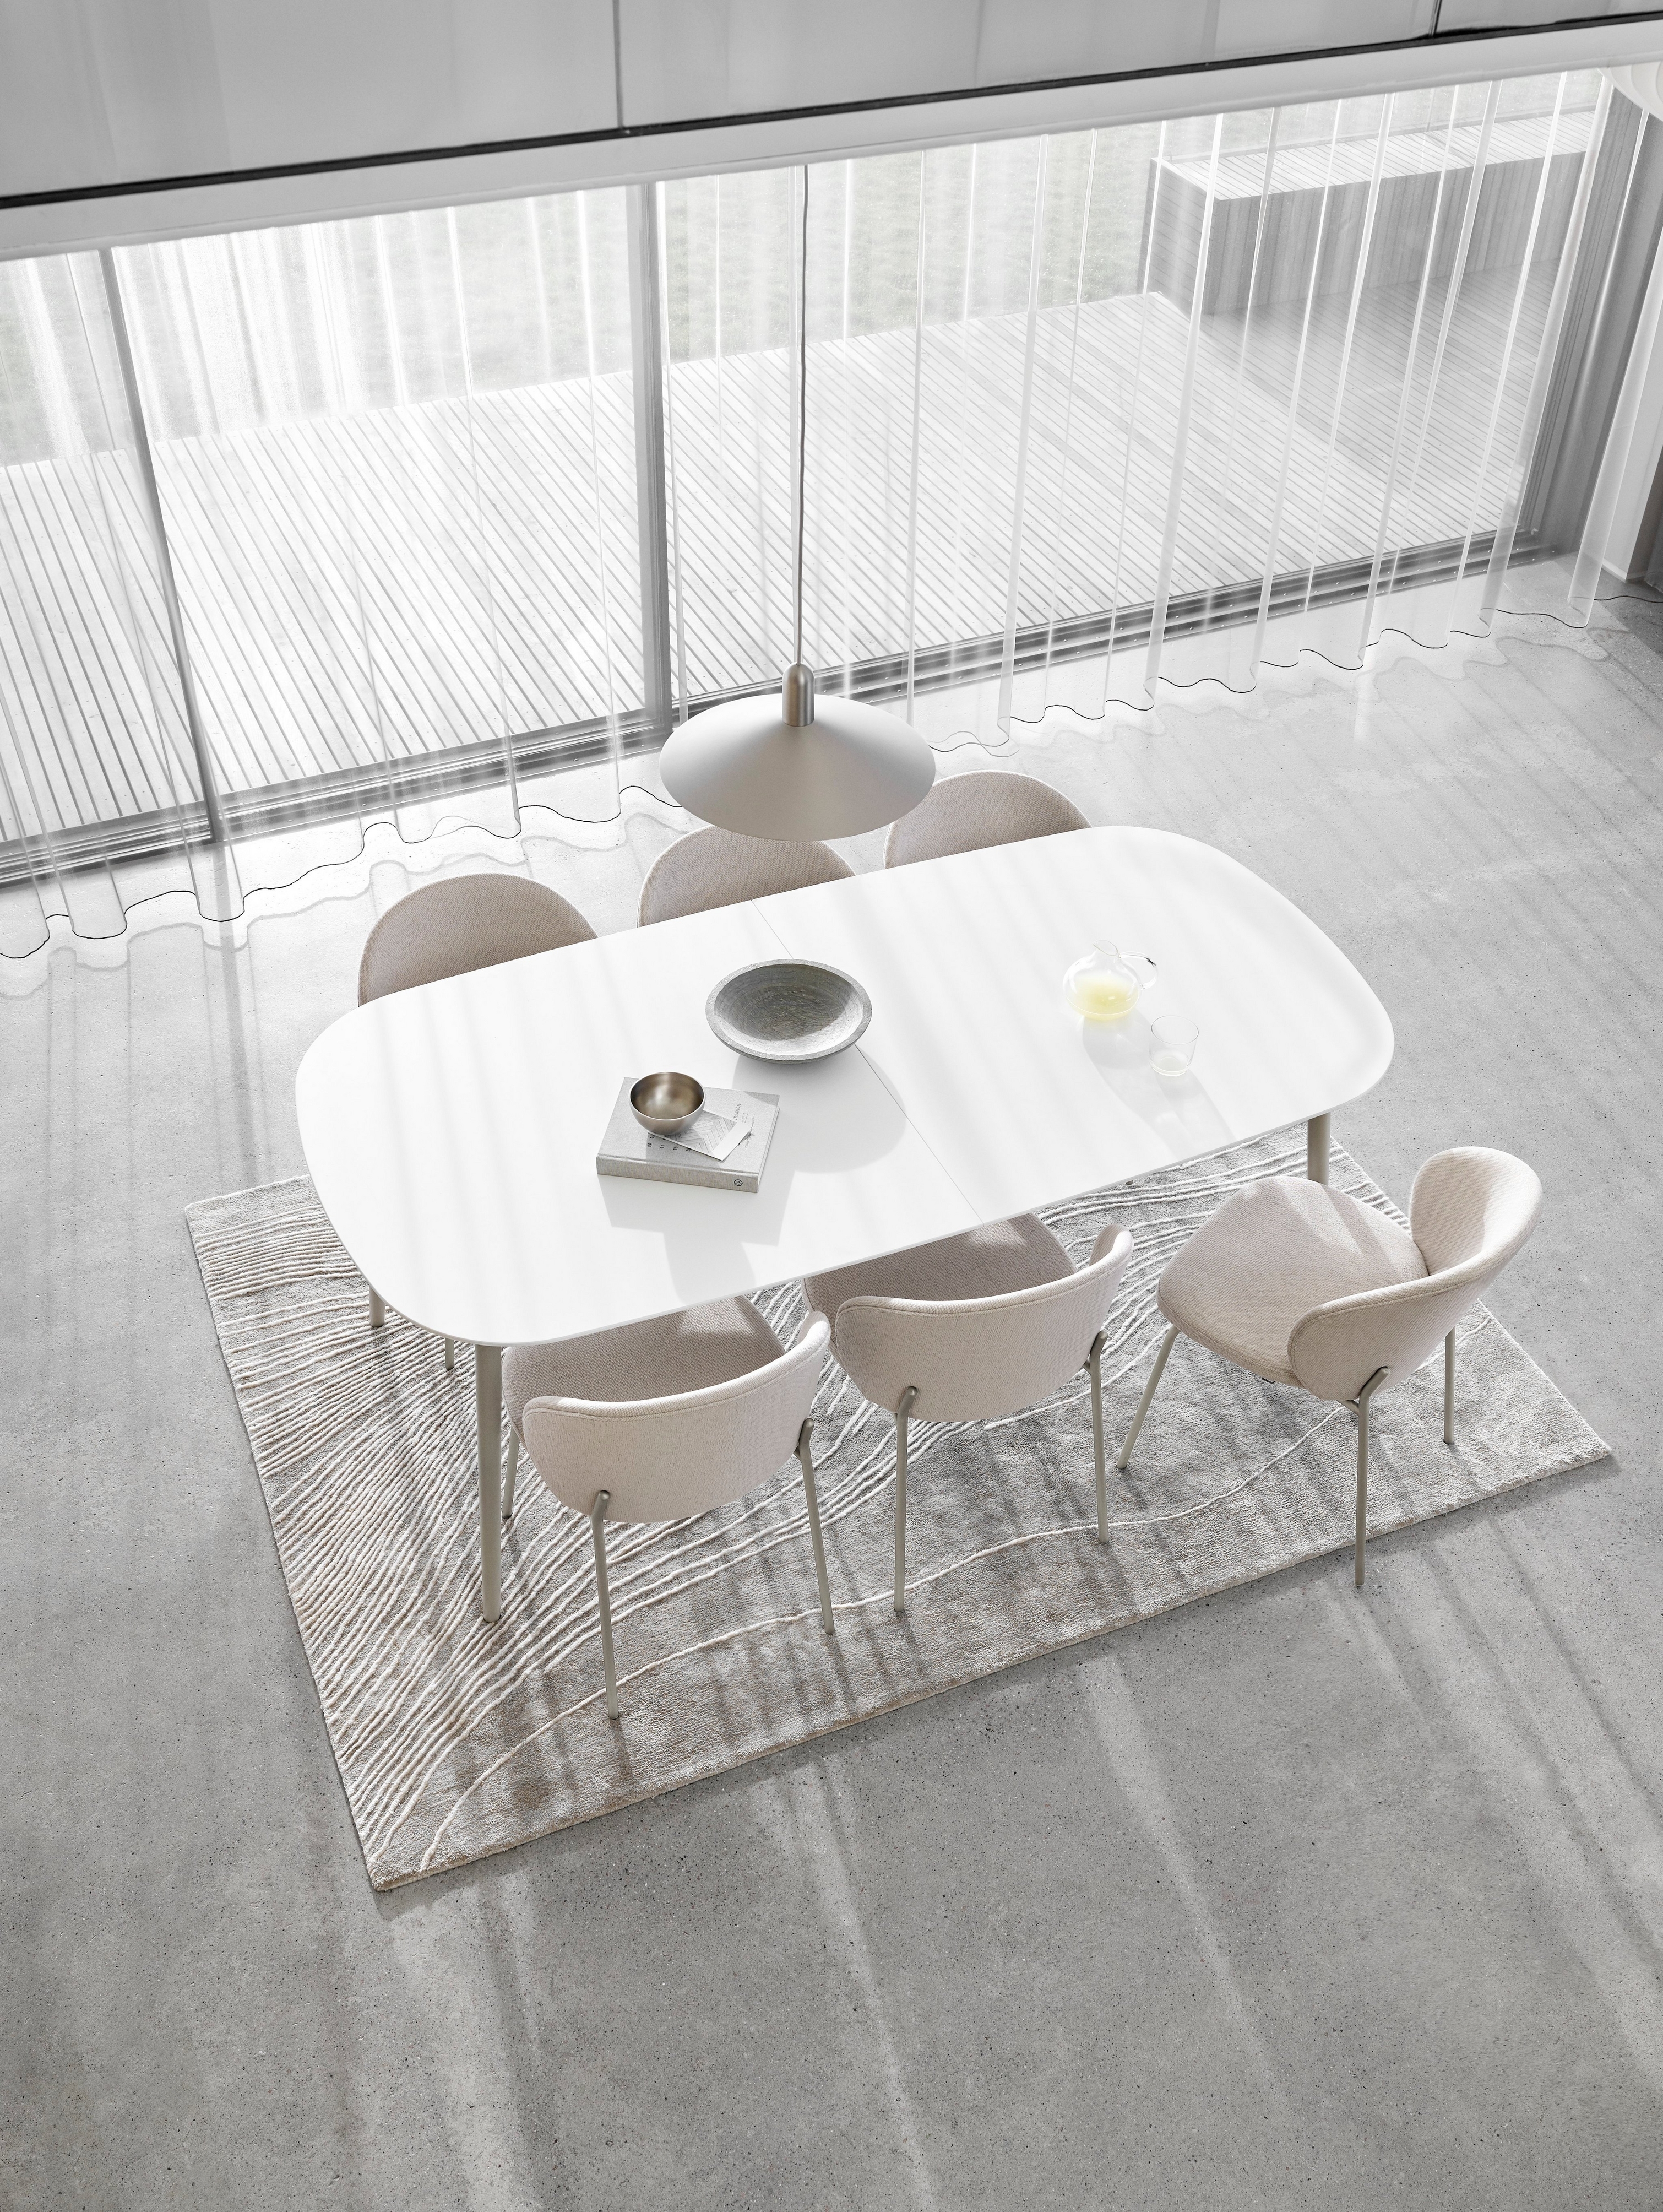 Comedor minimalista con mesa ovalada blanca, sillas, cortinas transparentes y alfombra texturizada.